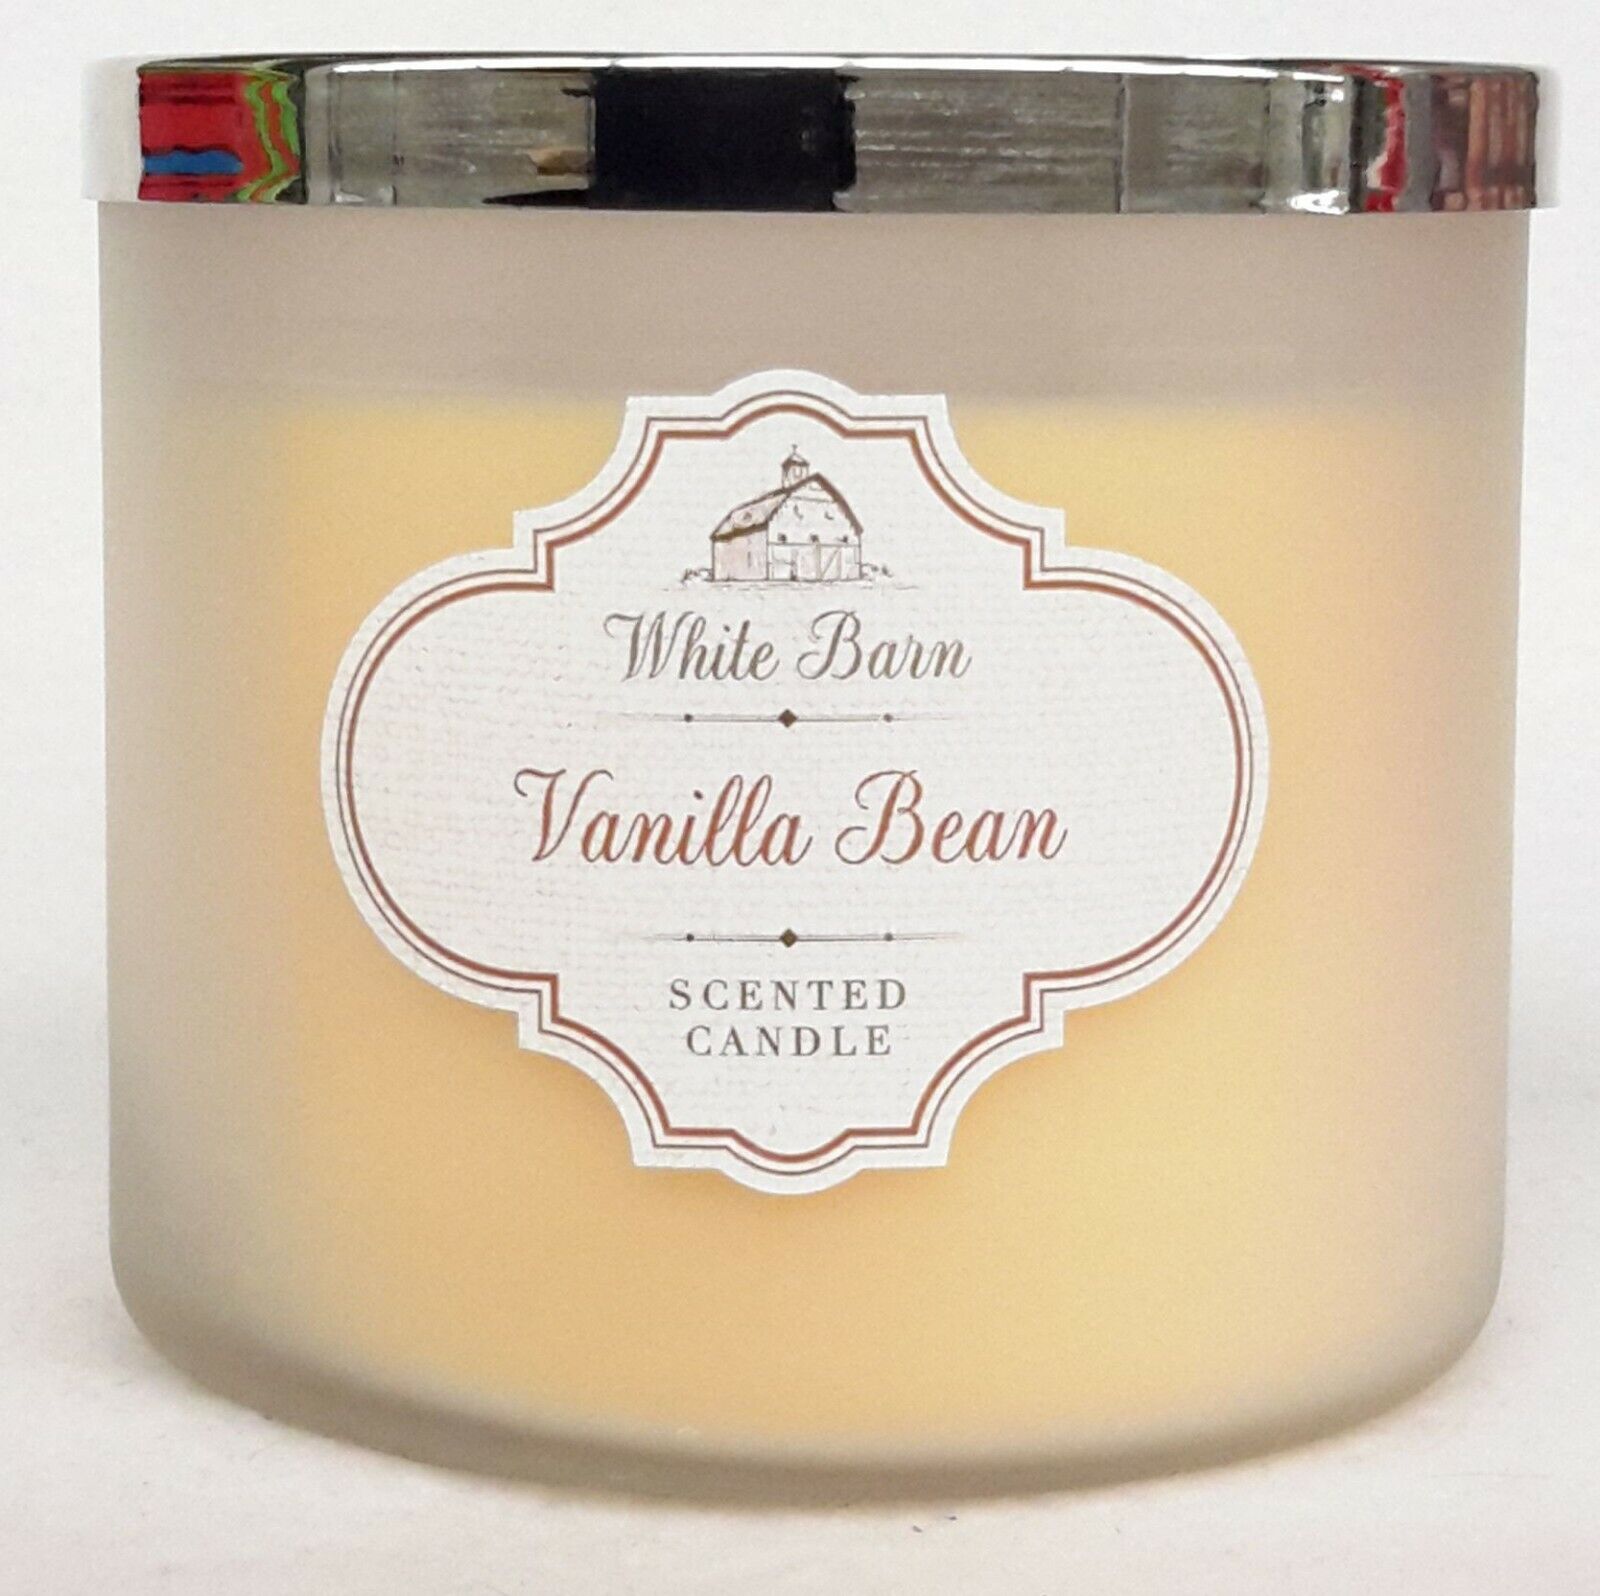 vanilla bean candle description